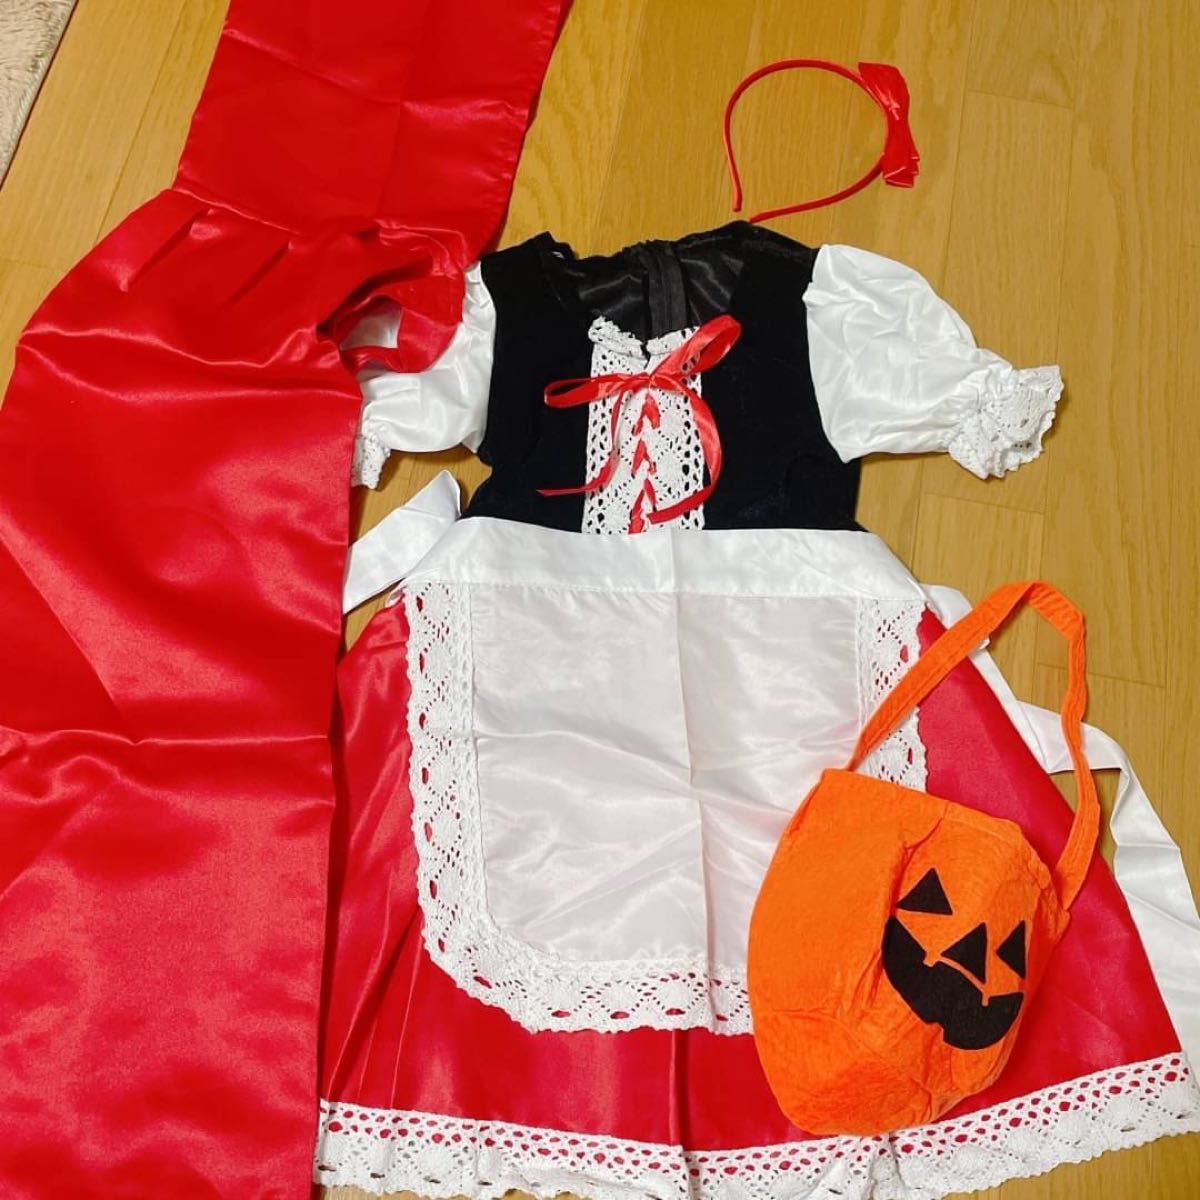 赤ずきんちゃん コスプレ キッズ イベント 誕生日 Halloween ハロウィン 女の子 ガール Girl girl 衣装